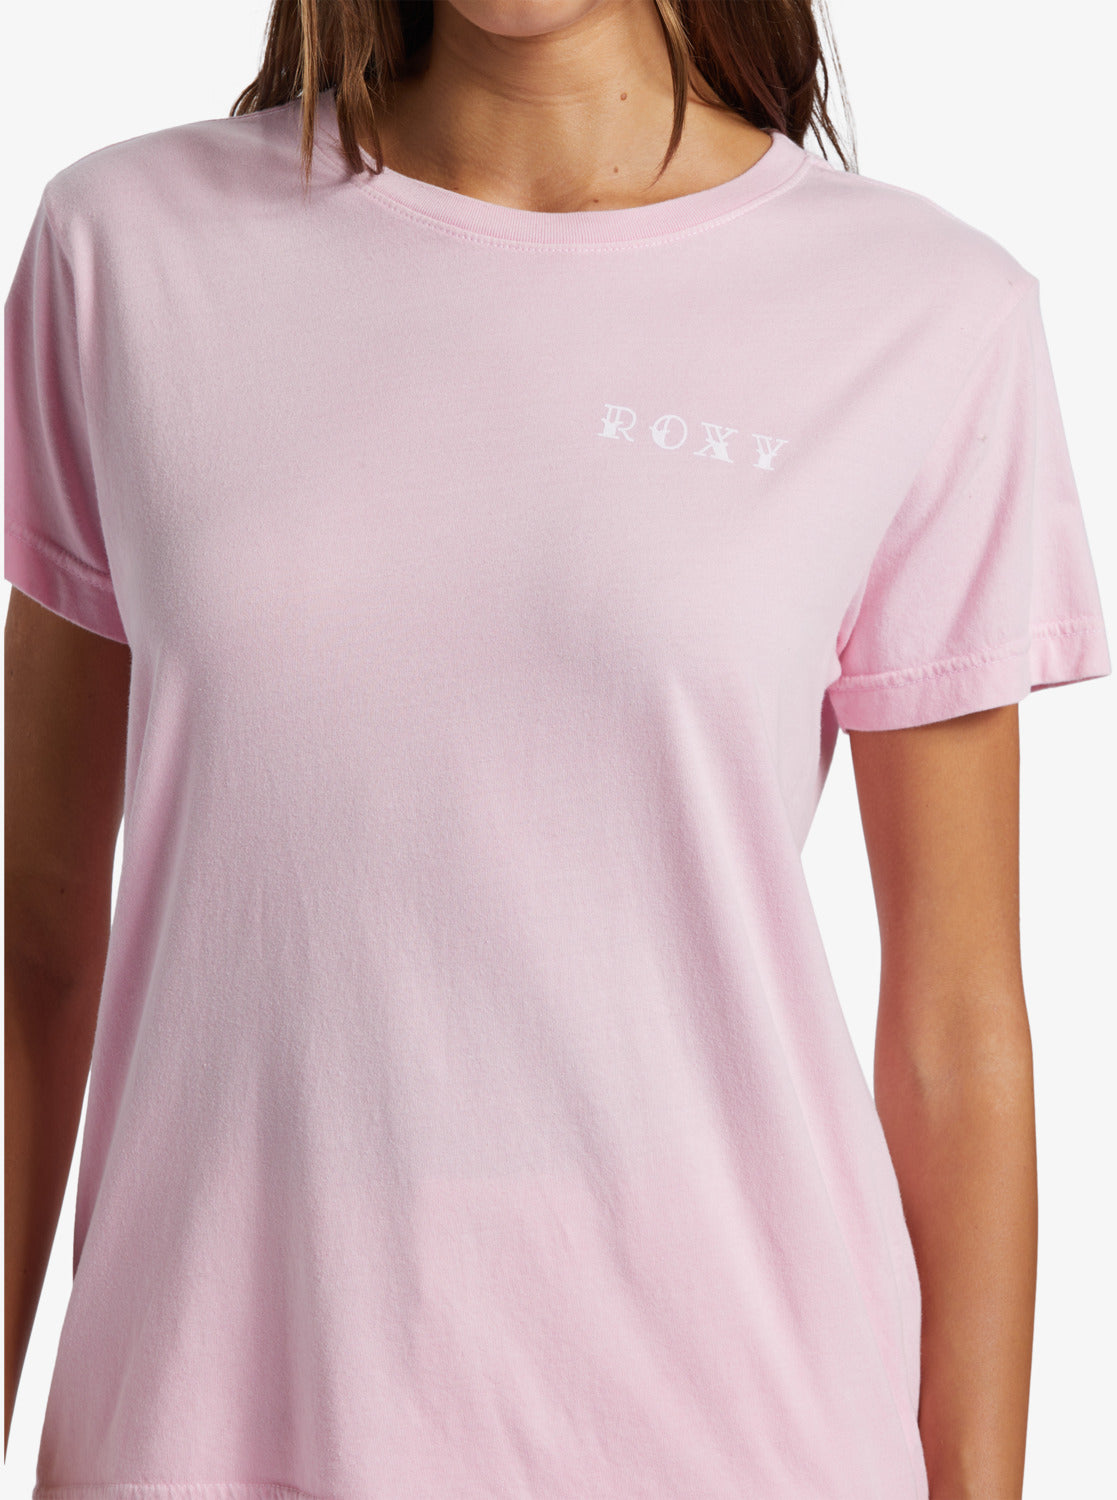 Sunny Days Boyfriend T-Shirt - Prism Pink